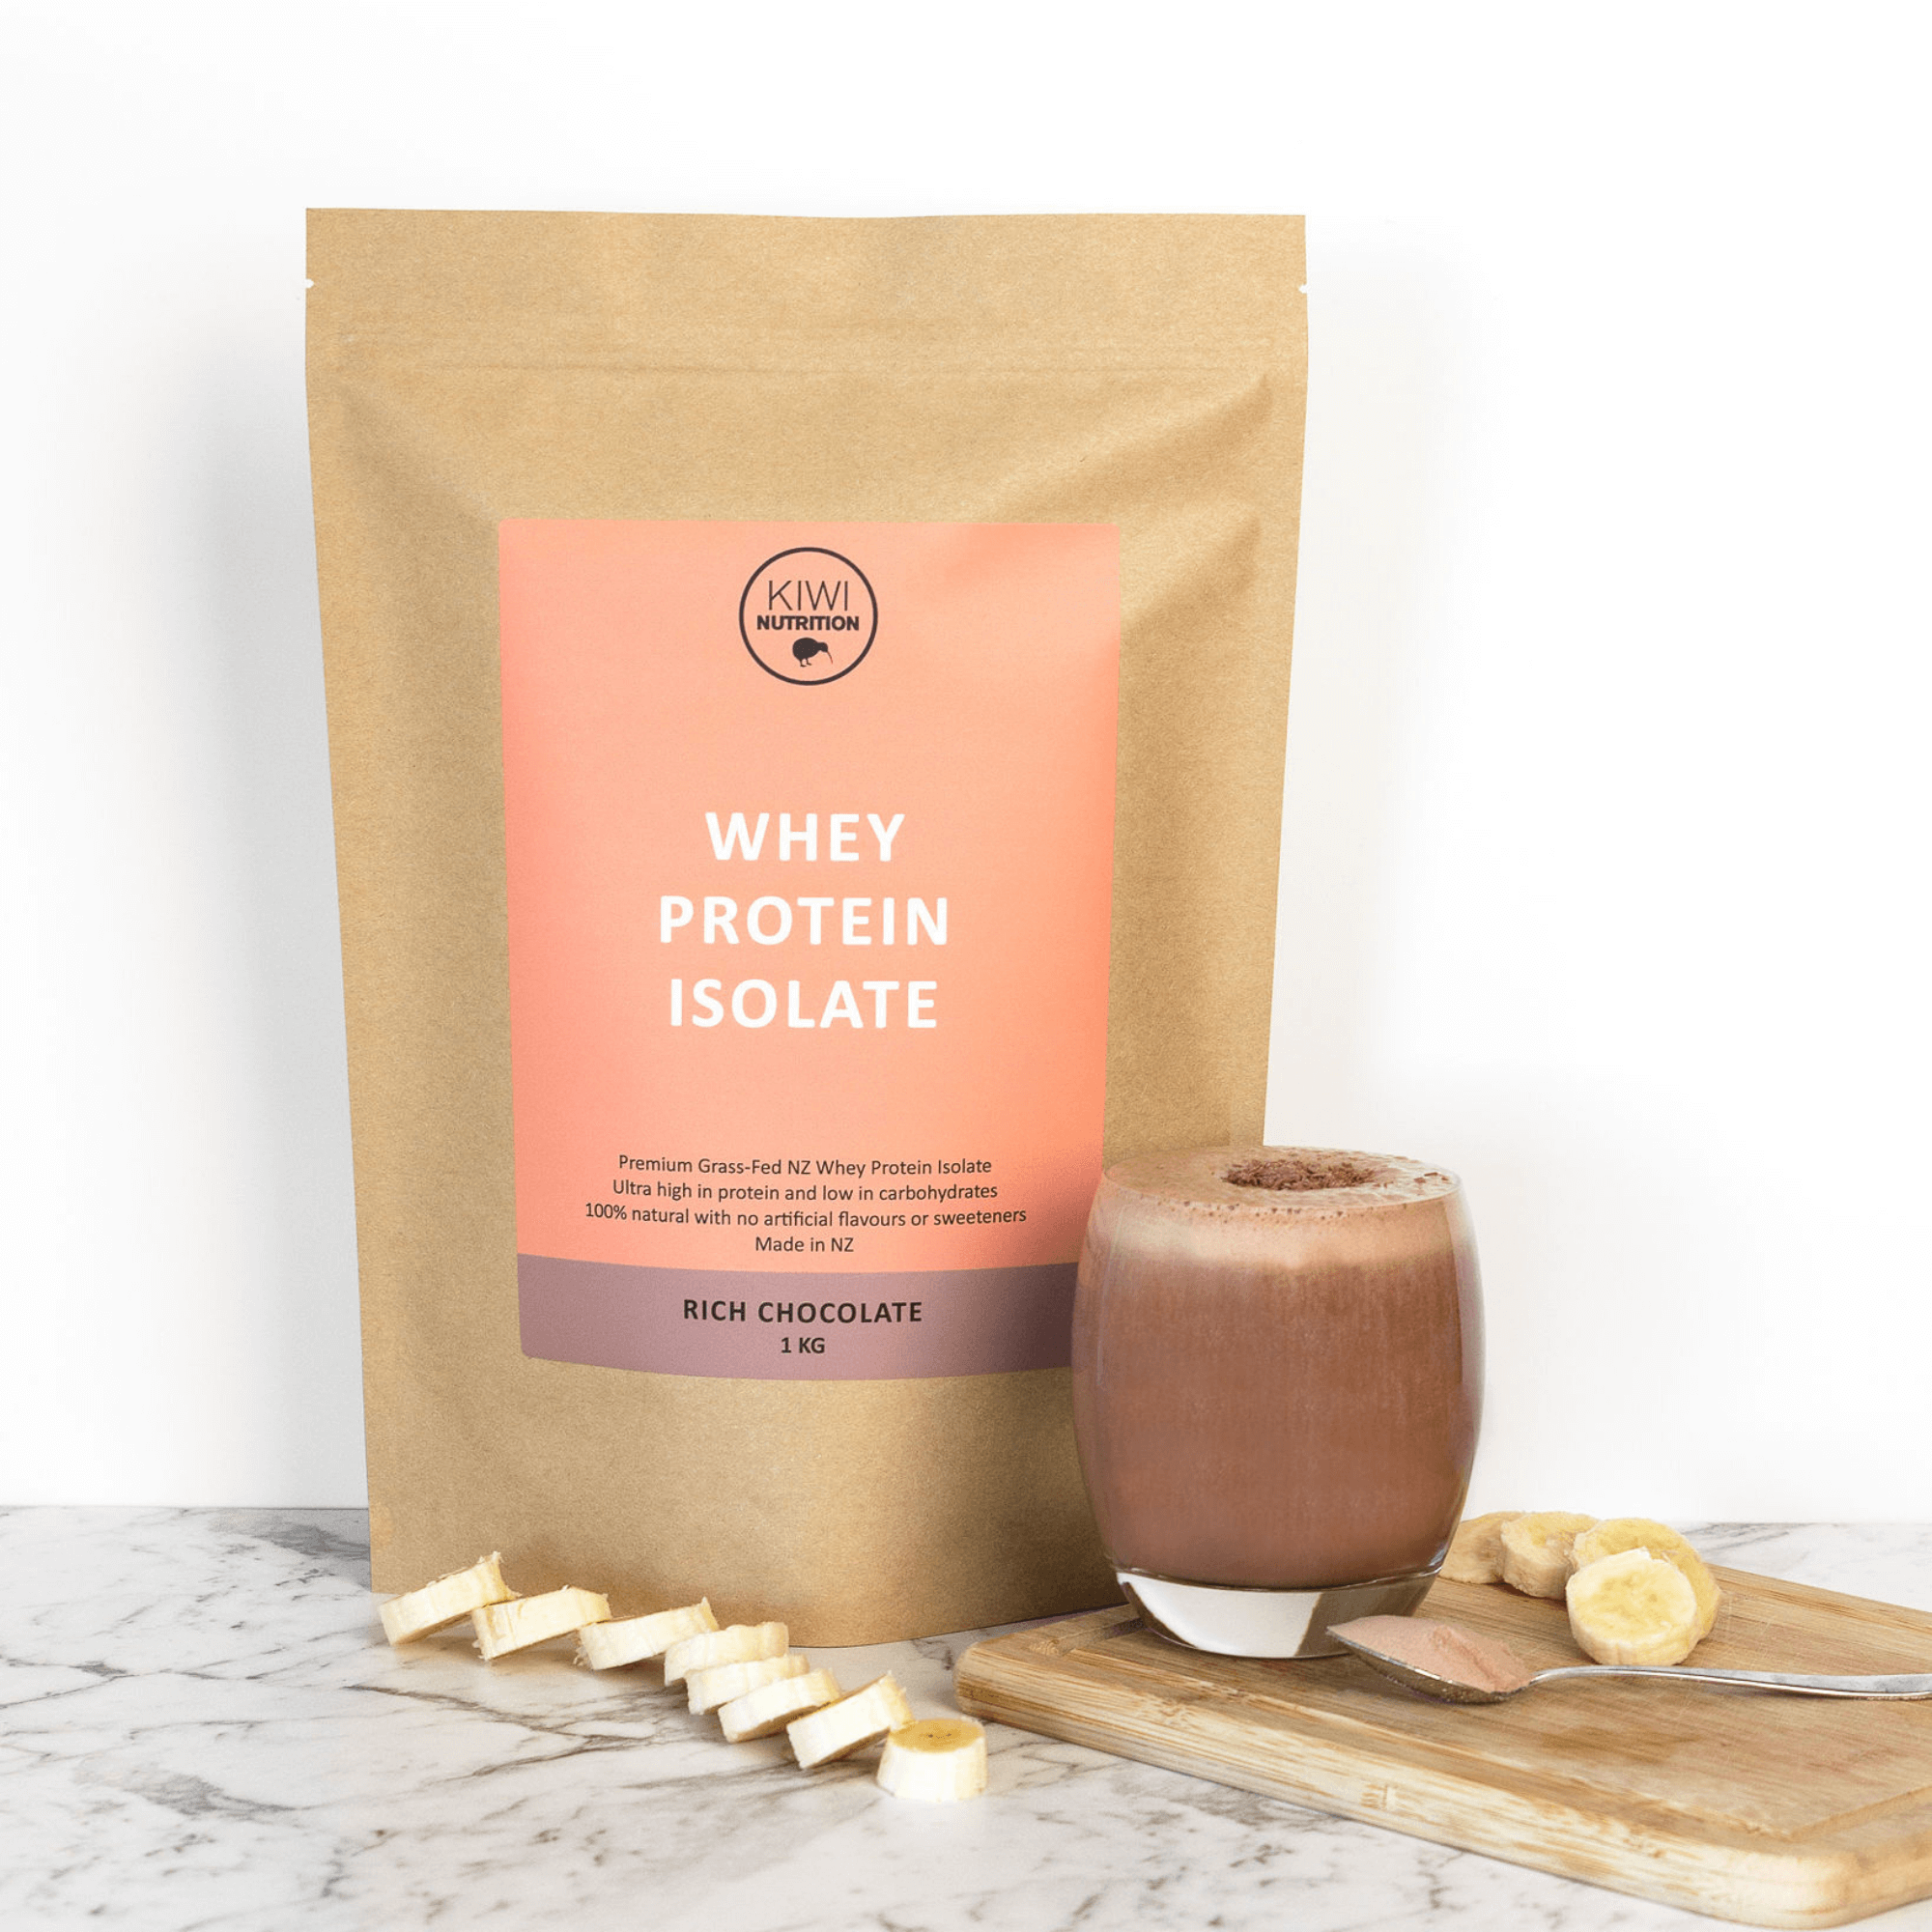 Protein Powder NZ, NZ Whey Protein Isolate, Kiwi Nutrition Chocolate Whey Protein Isolate